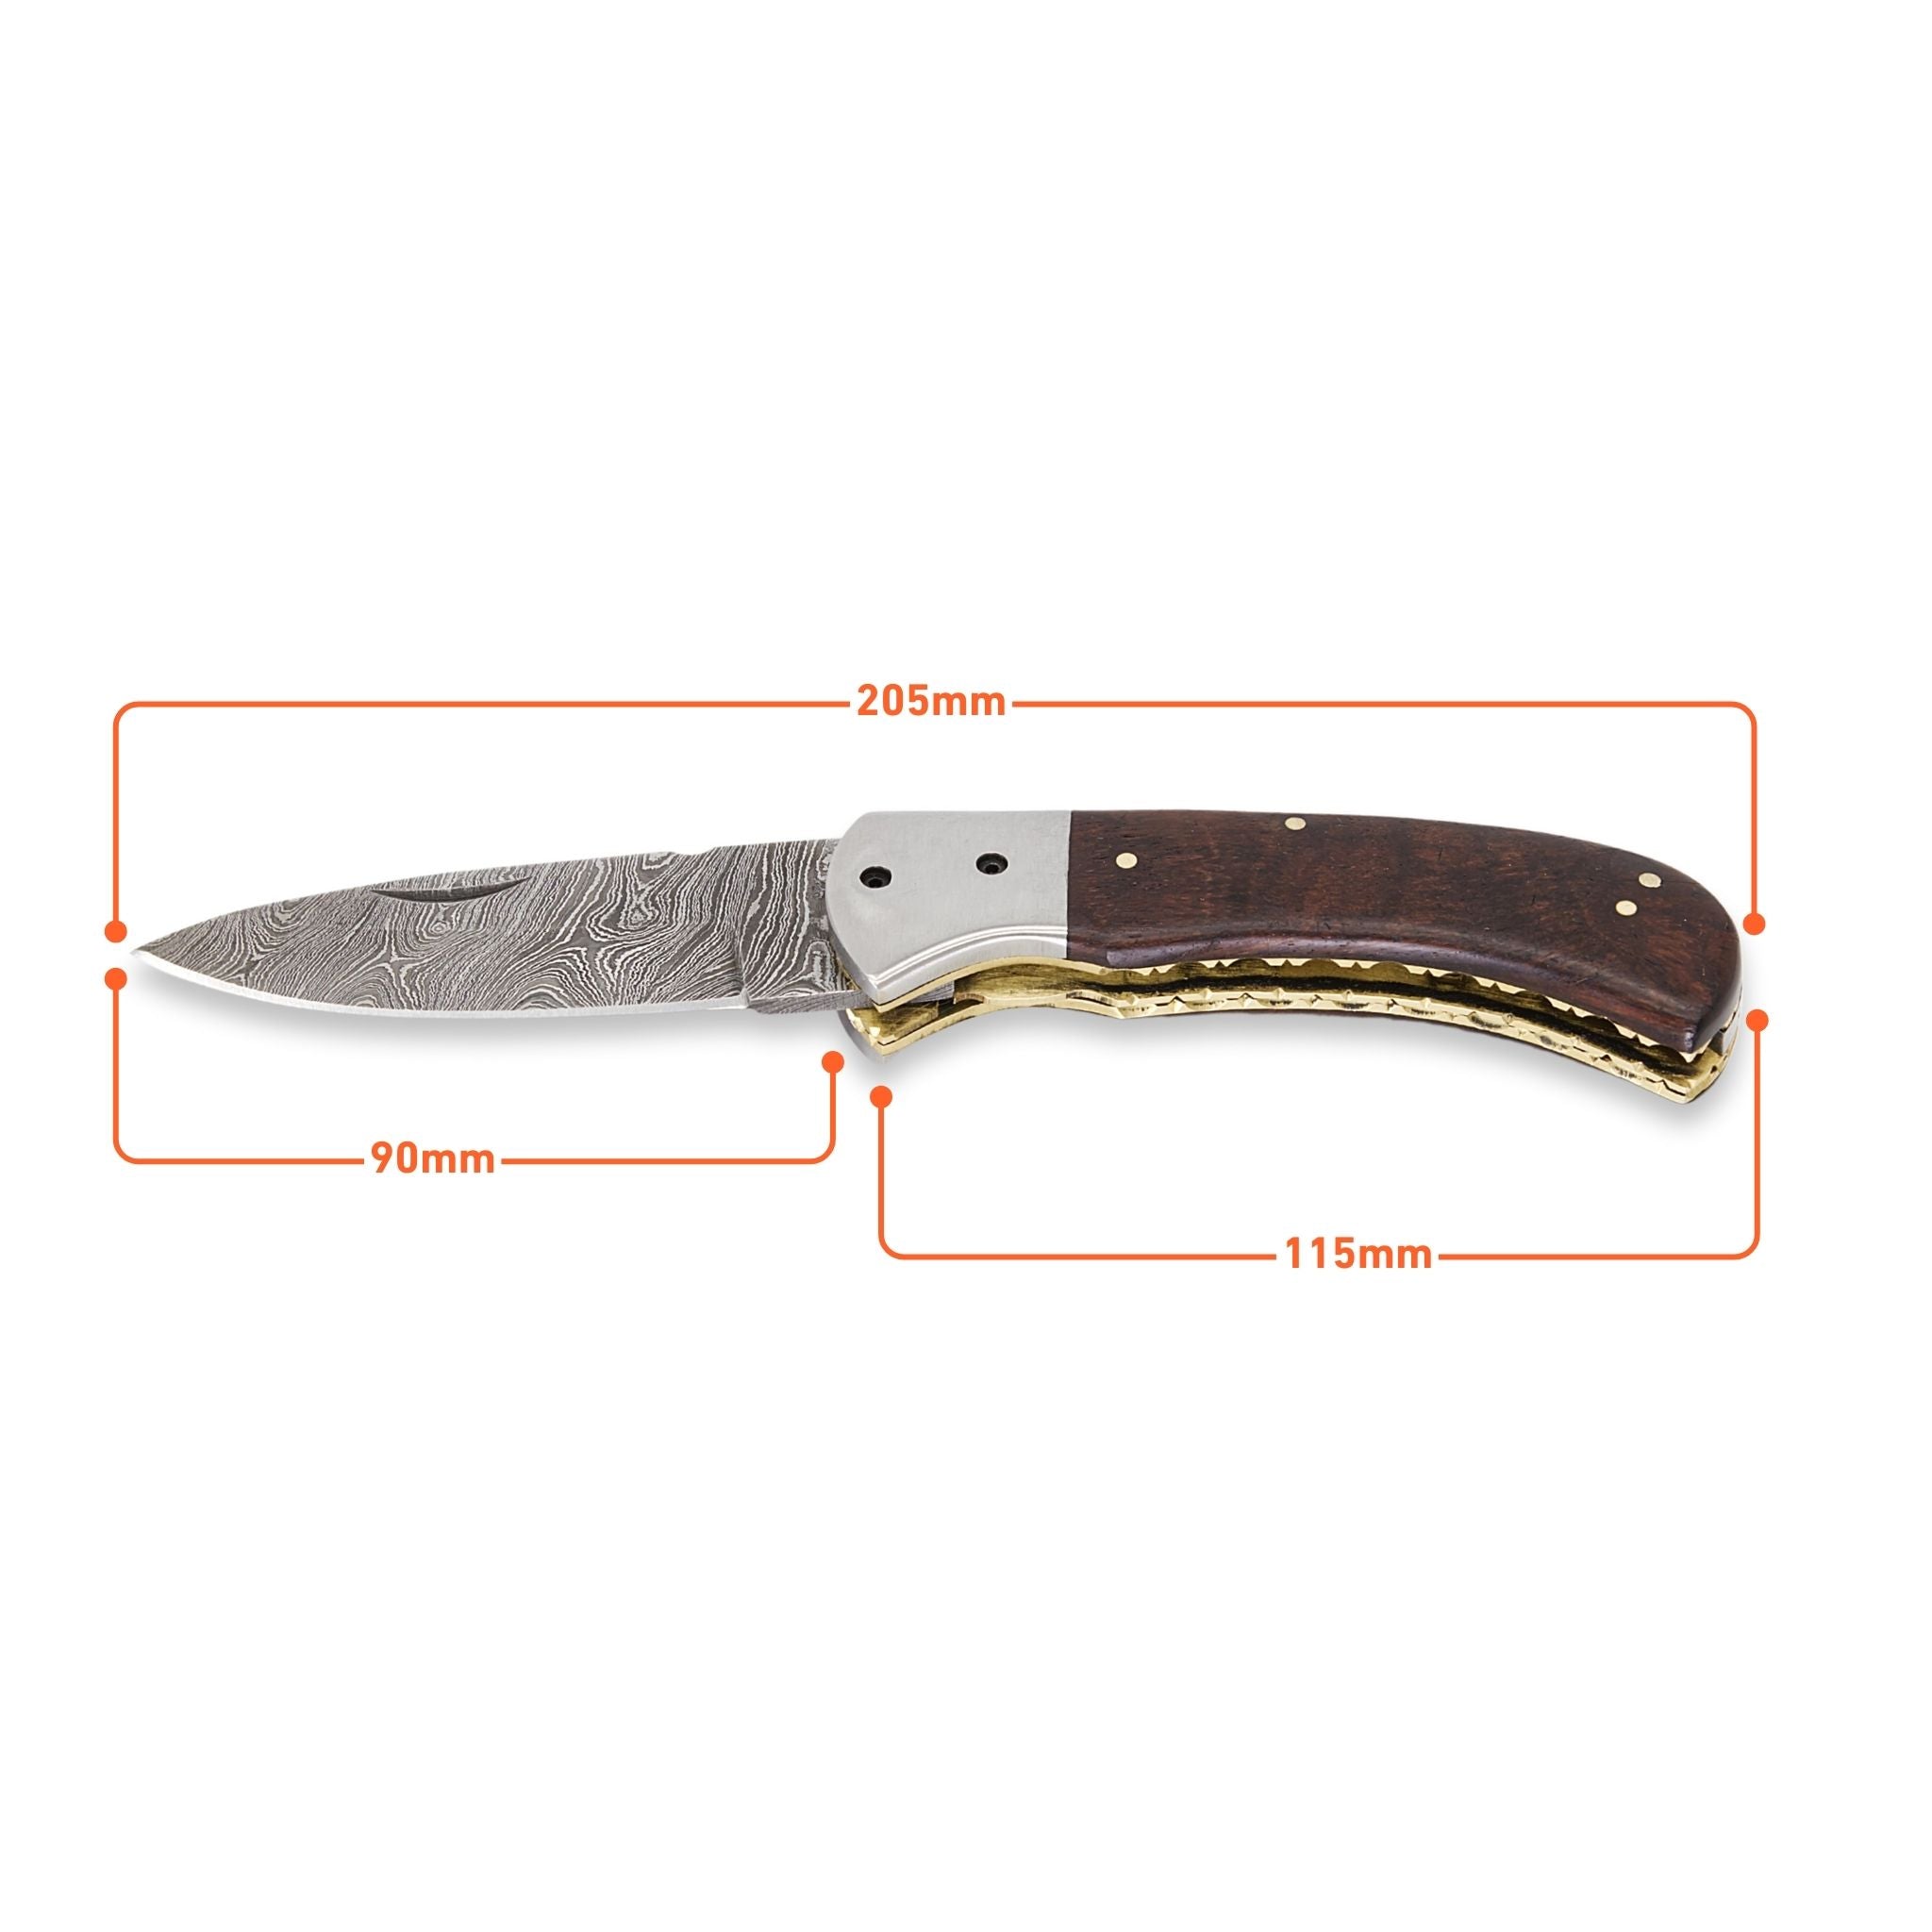 Trusty Fold II, Handmade Folding Knife, Damascus Steel Pocket Knife